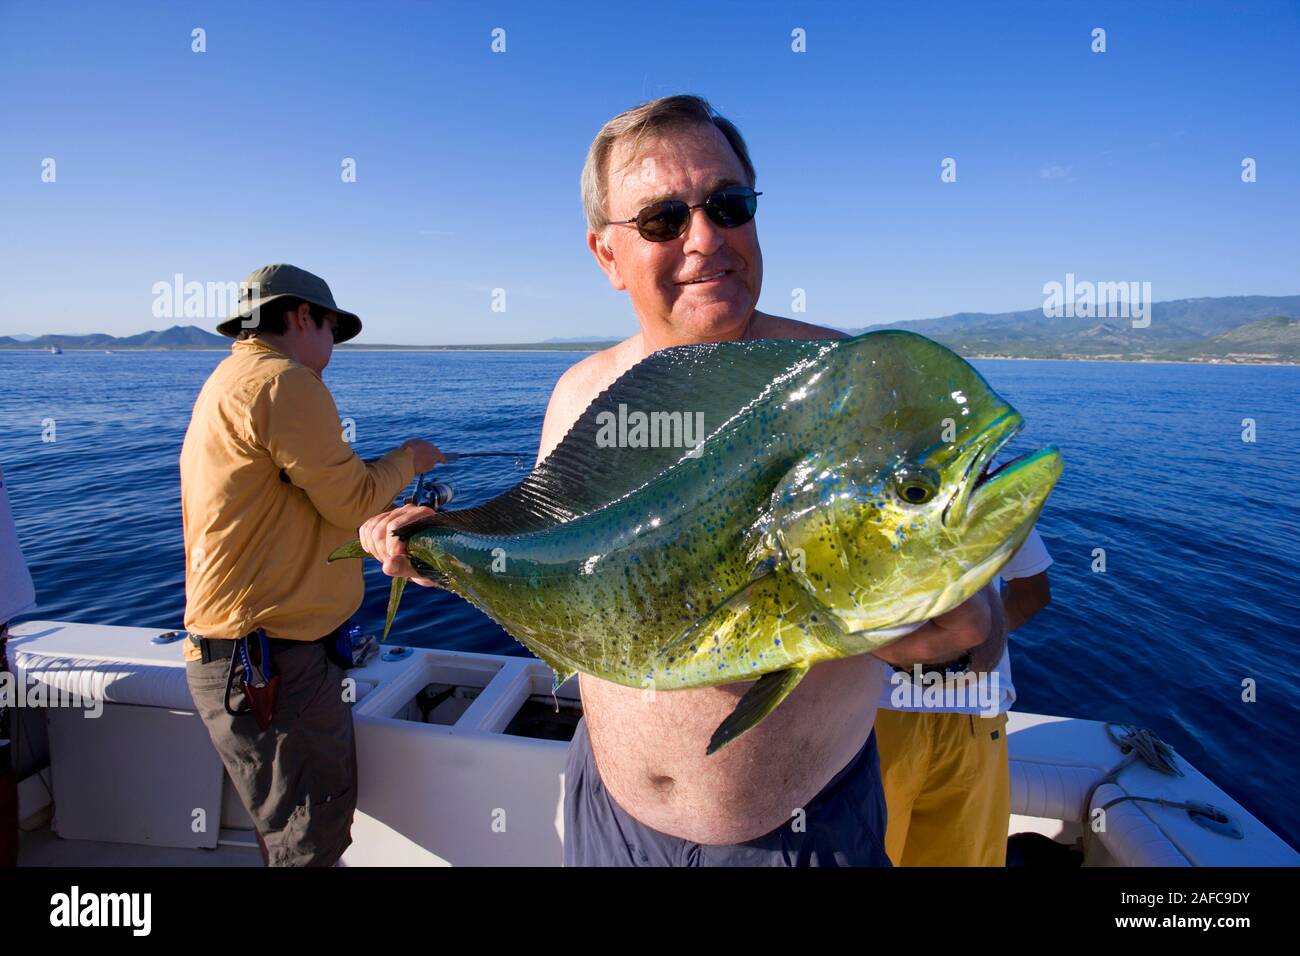 Hombre sujetando el mahi mahi pescado recién capturado en Baja California Sur, México Foto Suelta de modelo Foto de stock